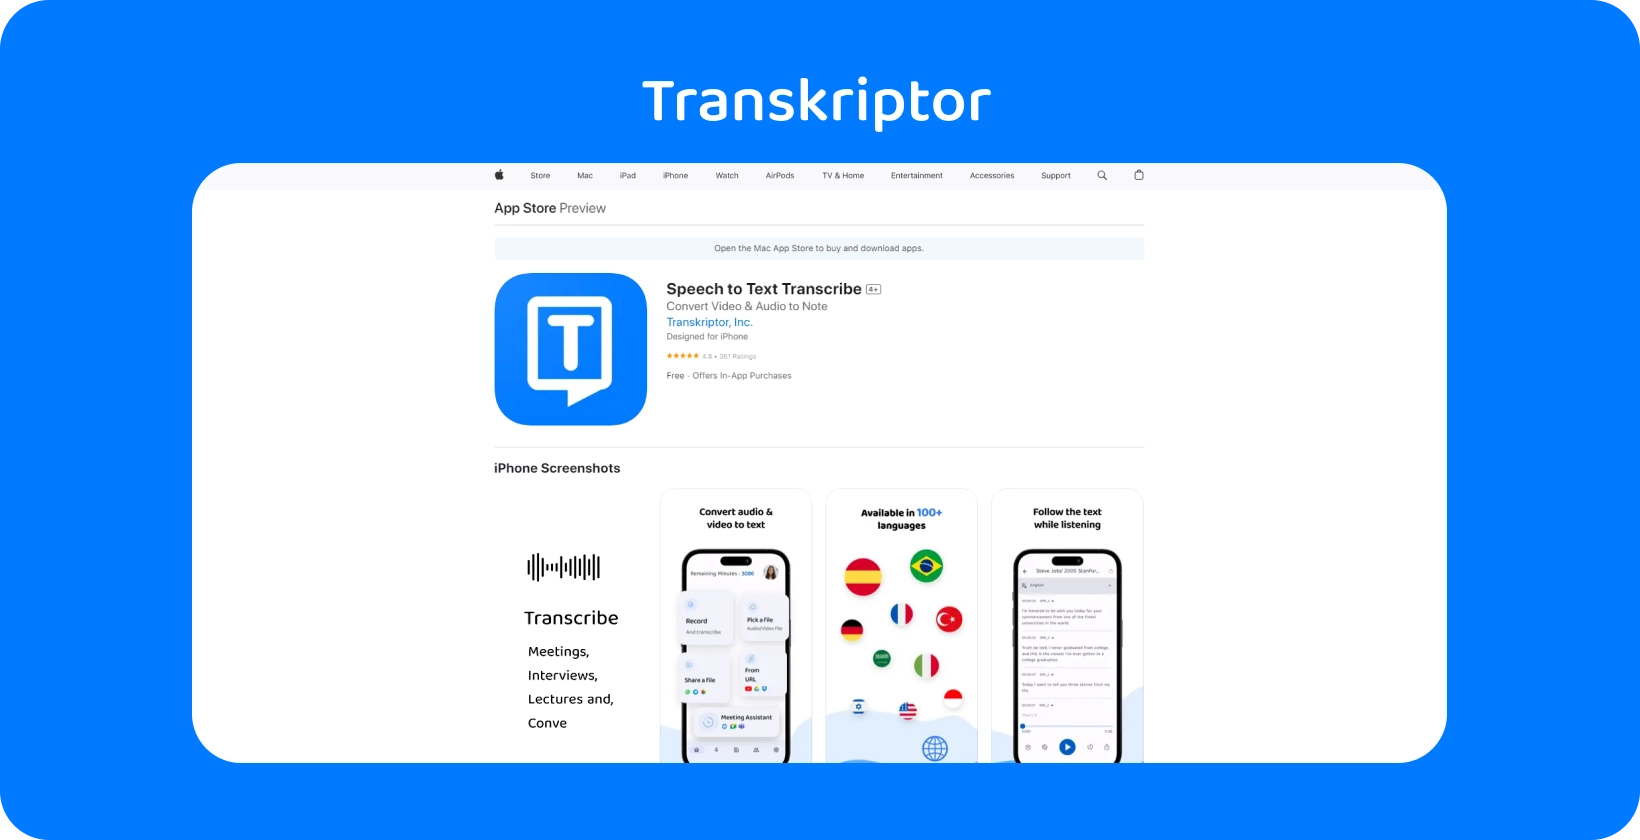 יישום Transkriptor הוצג iPhone, והדגיש את יכולות תמלול הדיבור לטקסט שלו.